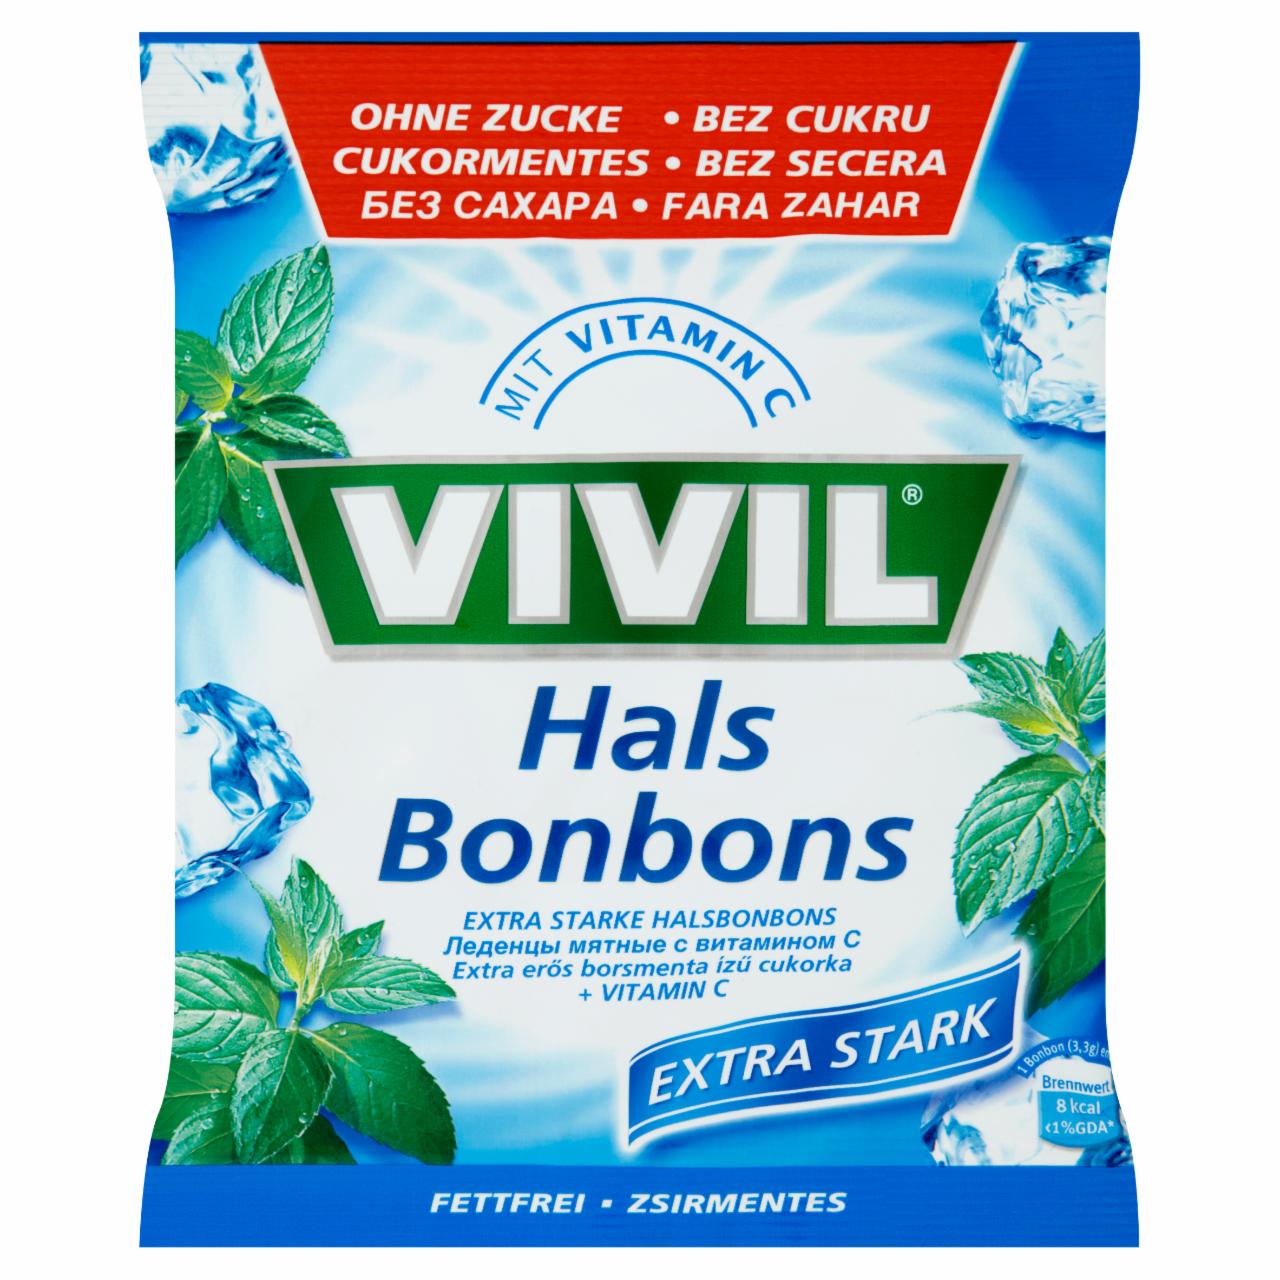 Képek - Vivil extra erős cukormentes borsmentaízű cukorka C-vitaminnal 75 g